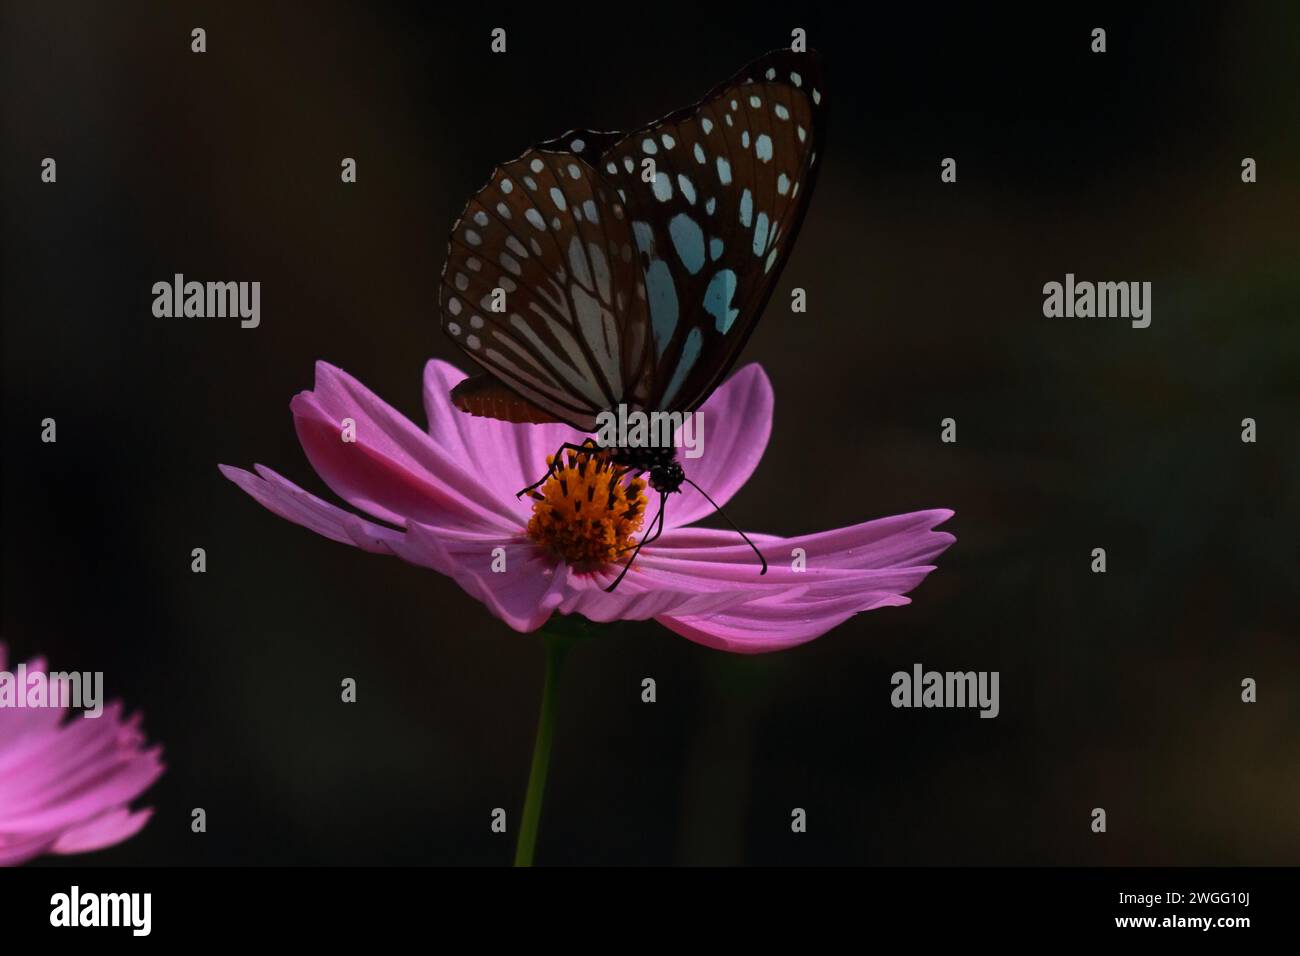 hermosa mariposa de tigre azul o tirumala lima en la flor del cosmos y polinización de la flor en el jardín, temporada de primavera Foto de stock